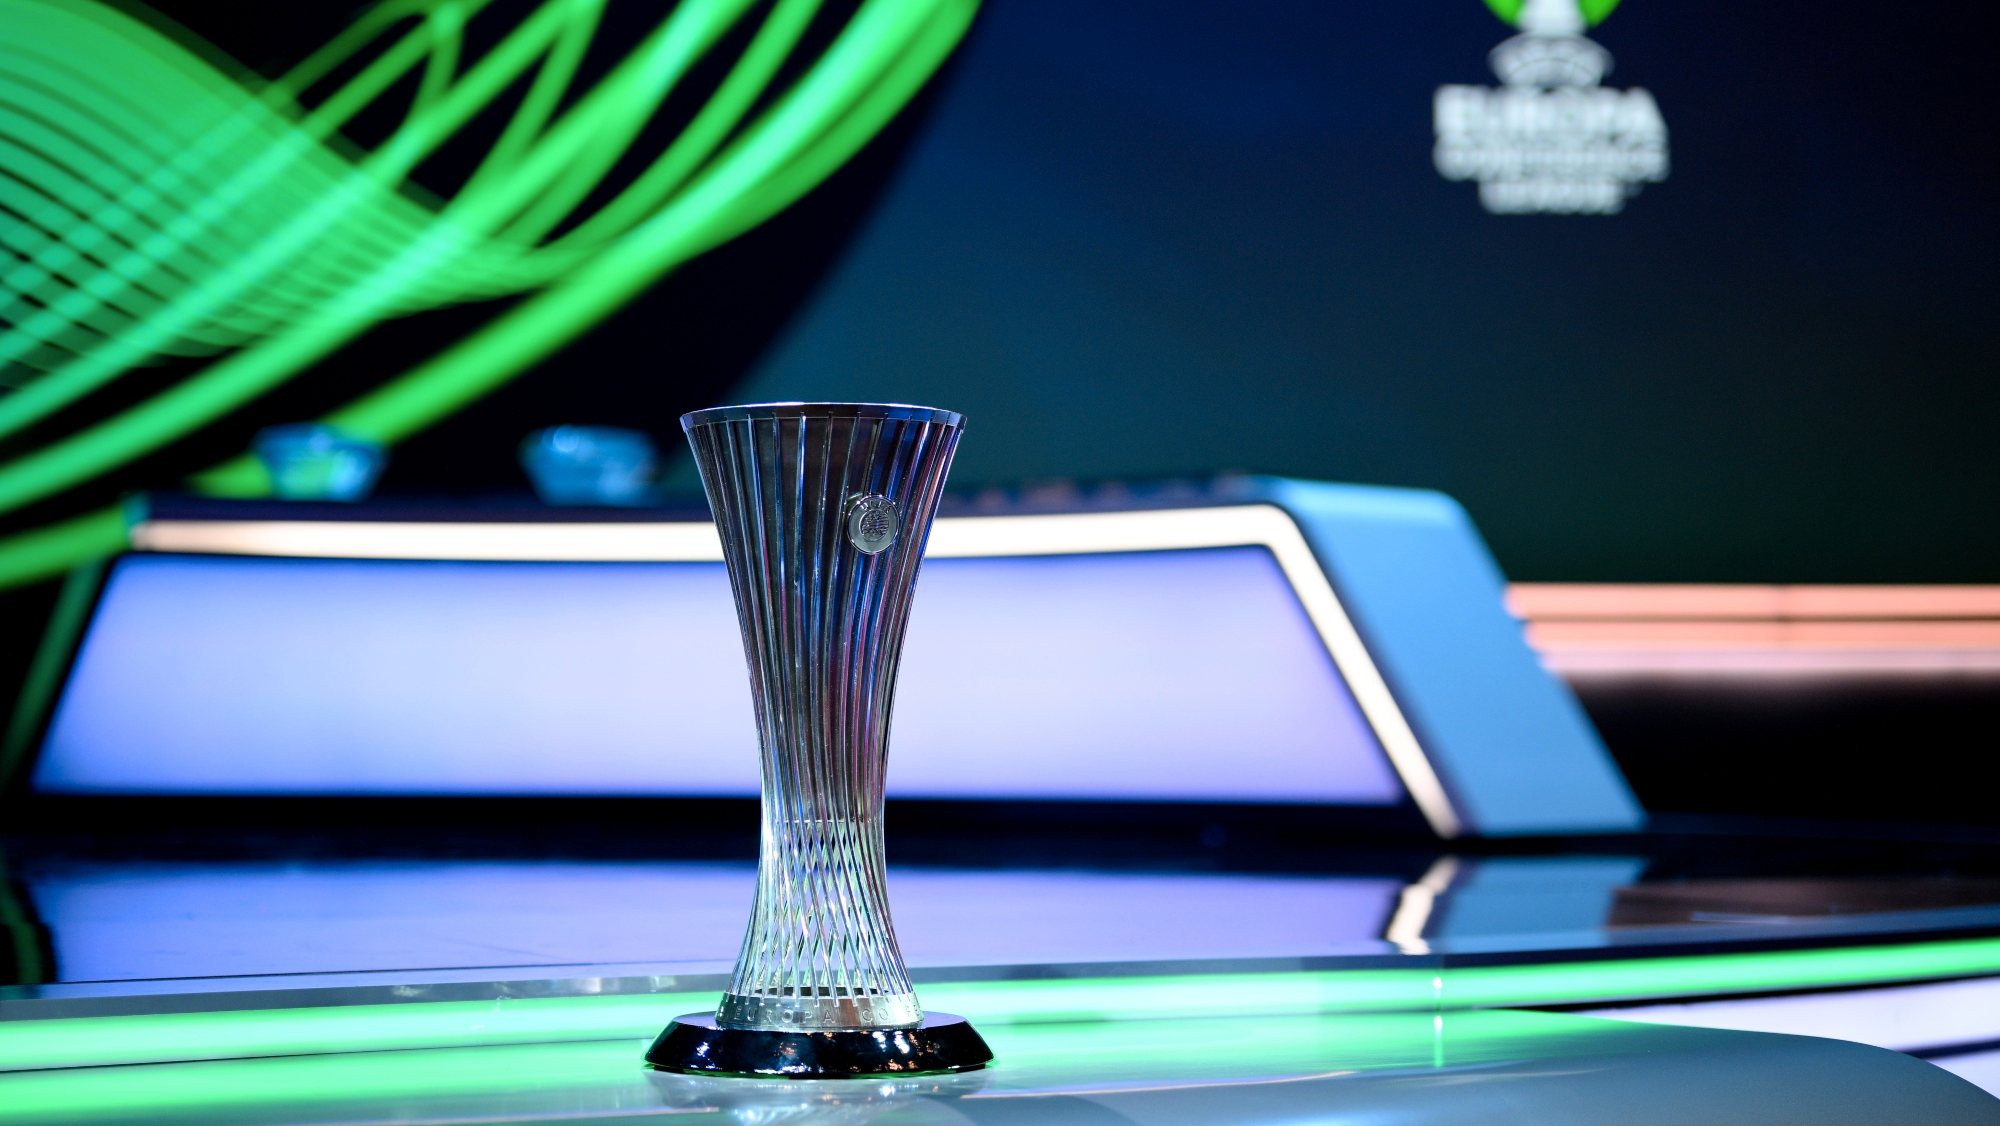 Roma ganhou a primeira edição da Liga Conferência, que terá a final do segundo anos em 2023 na Fortuna Arena, em Praga